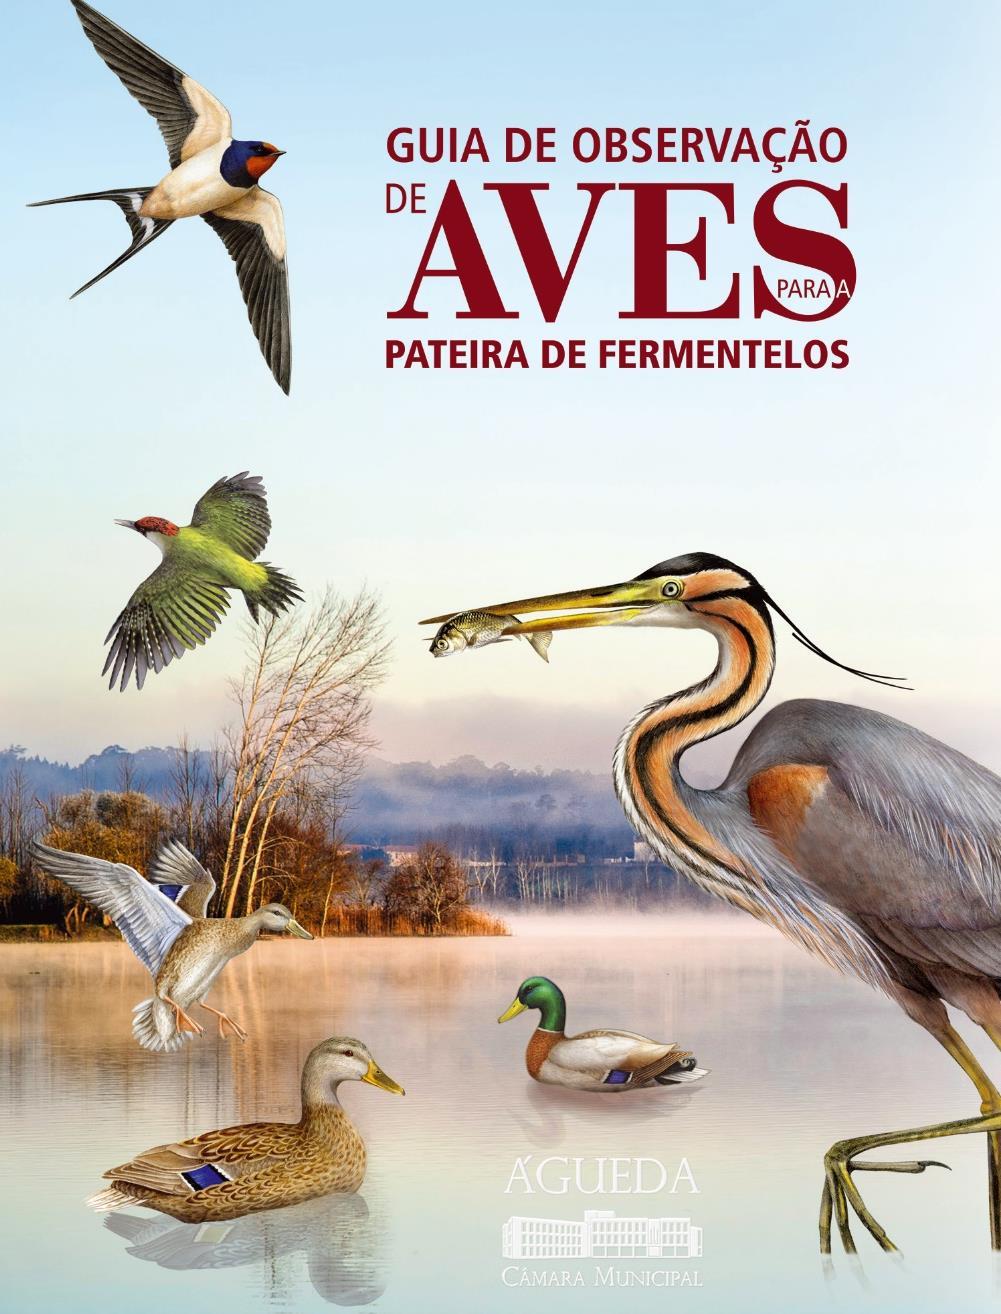 PATEIRA DE FERMENTELOS FORTE PRESENÇA DE AVIFAUNA Nesta área classificada, a avifauna assume uma